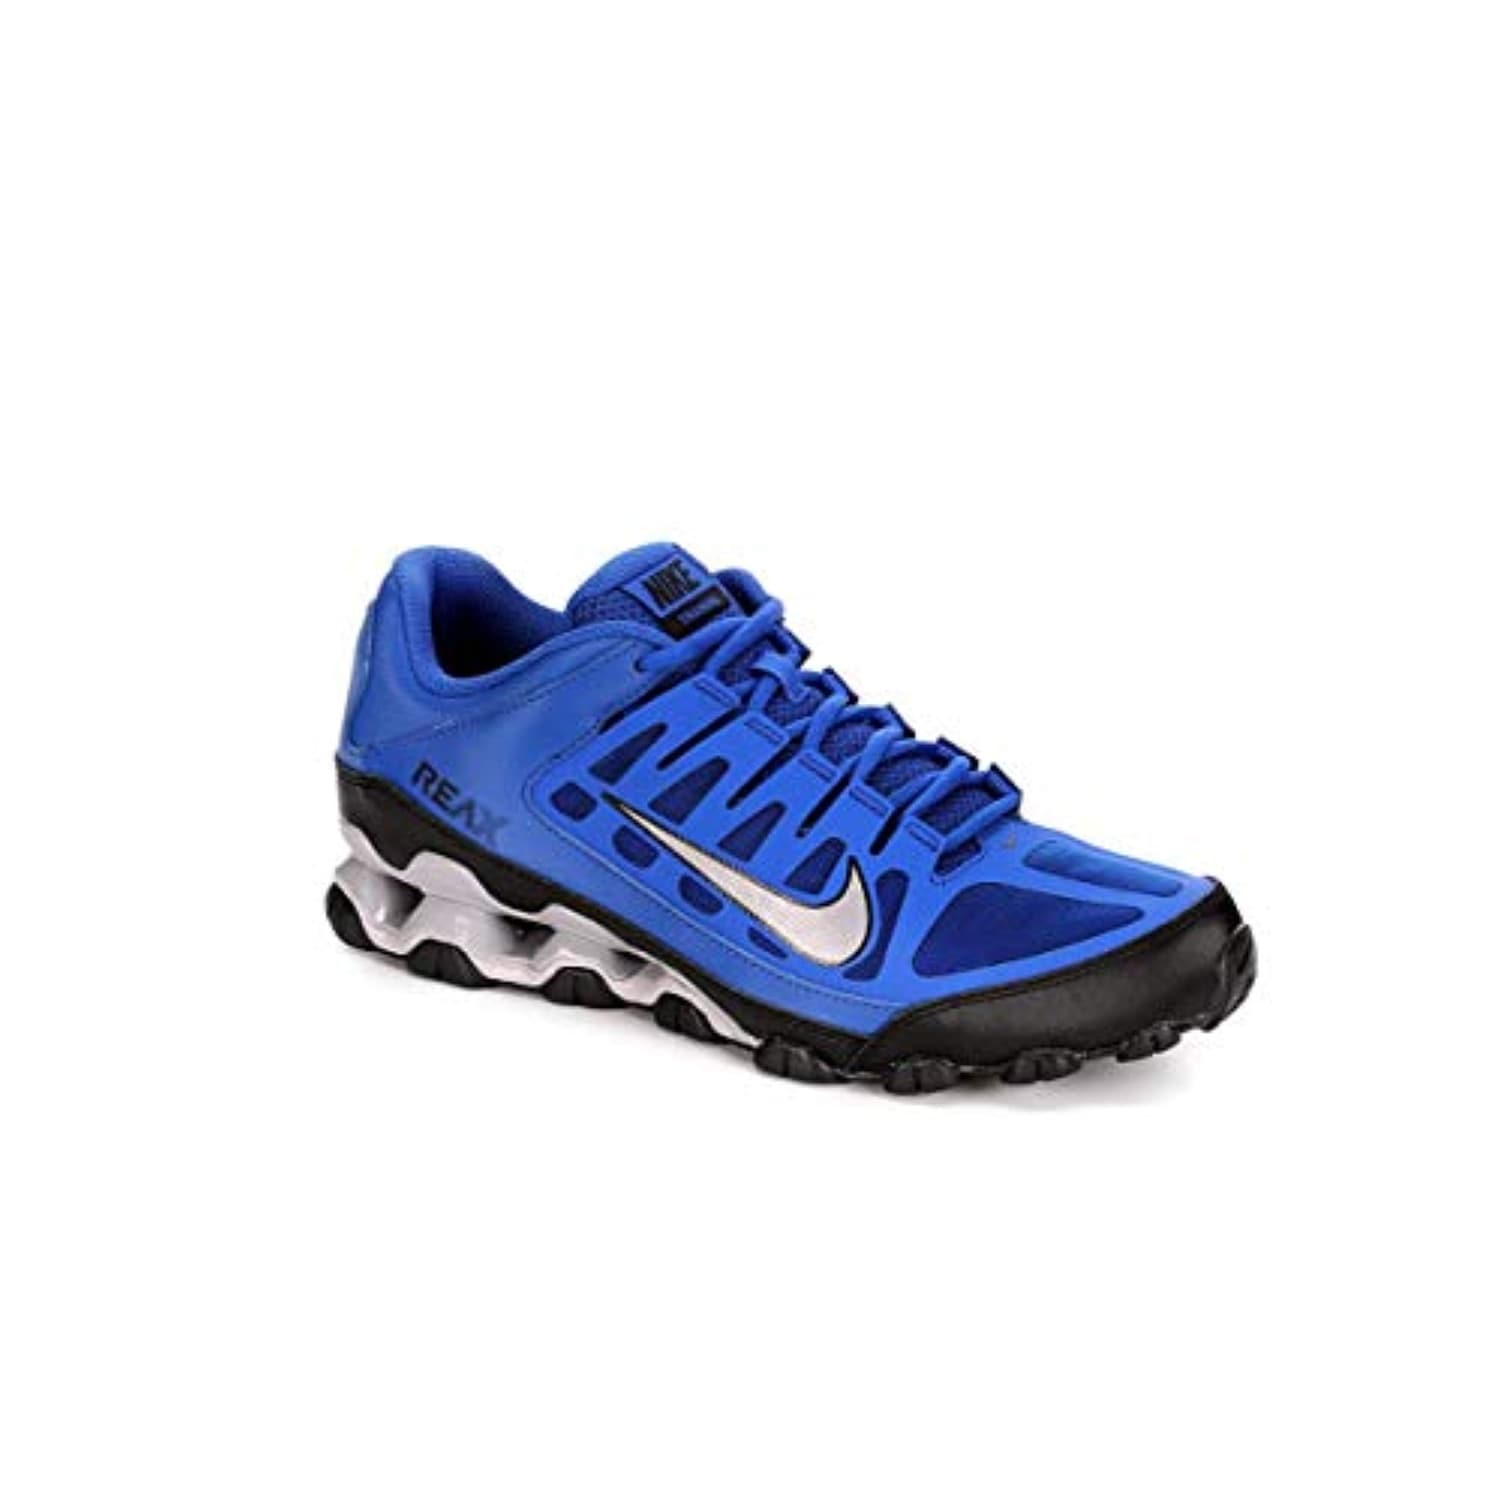 Nike Reax 8 Mens Training Shoes (7.5 